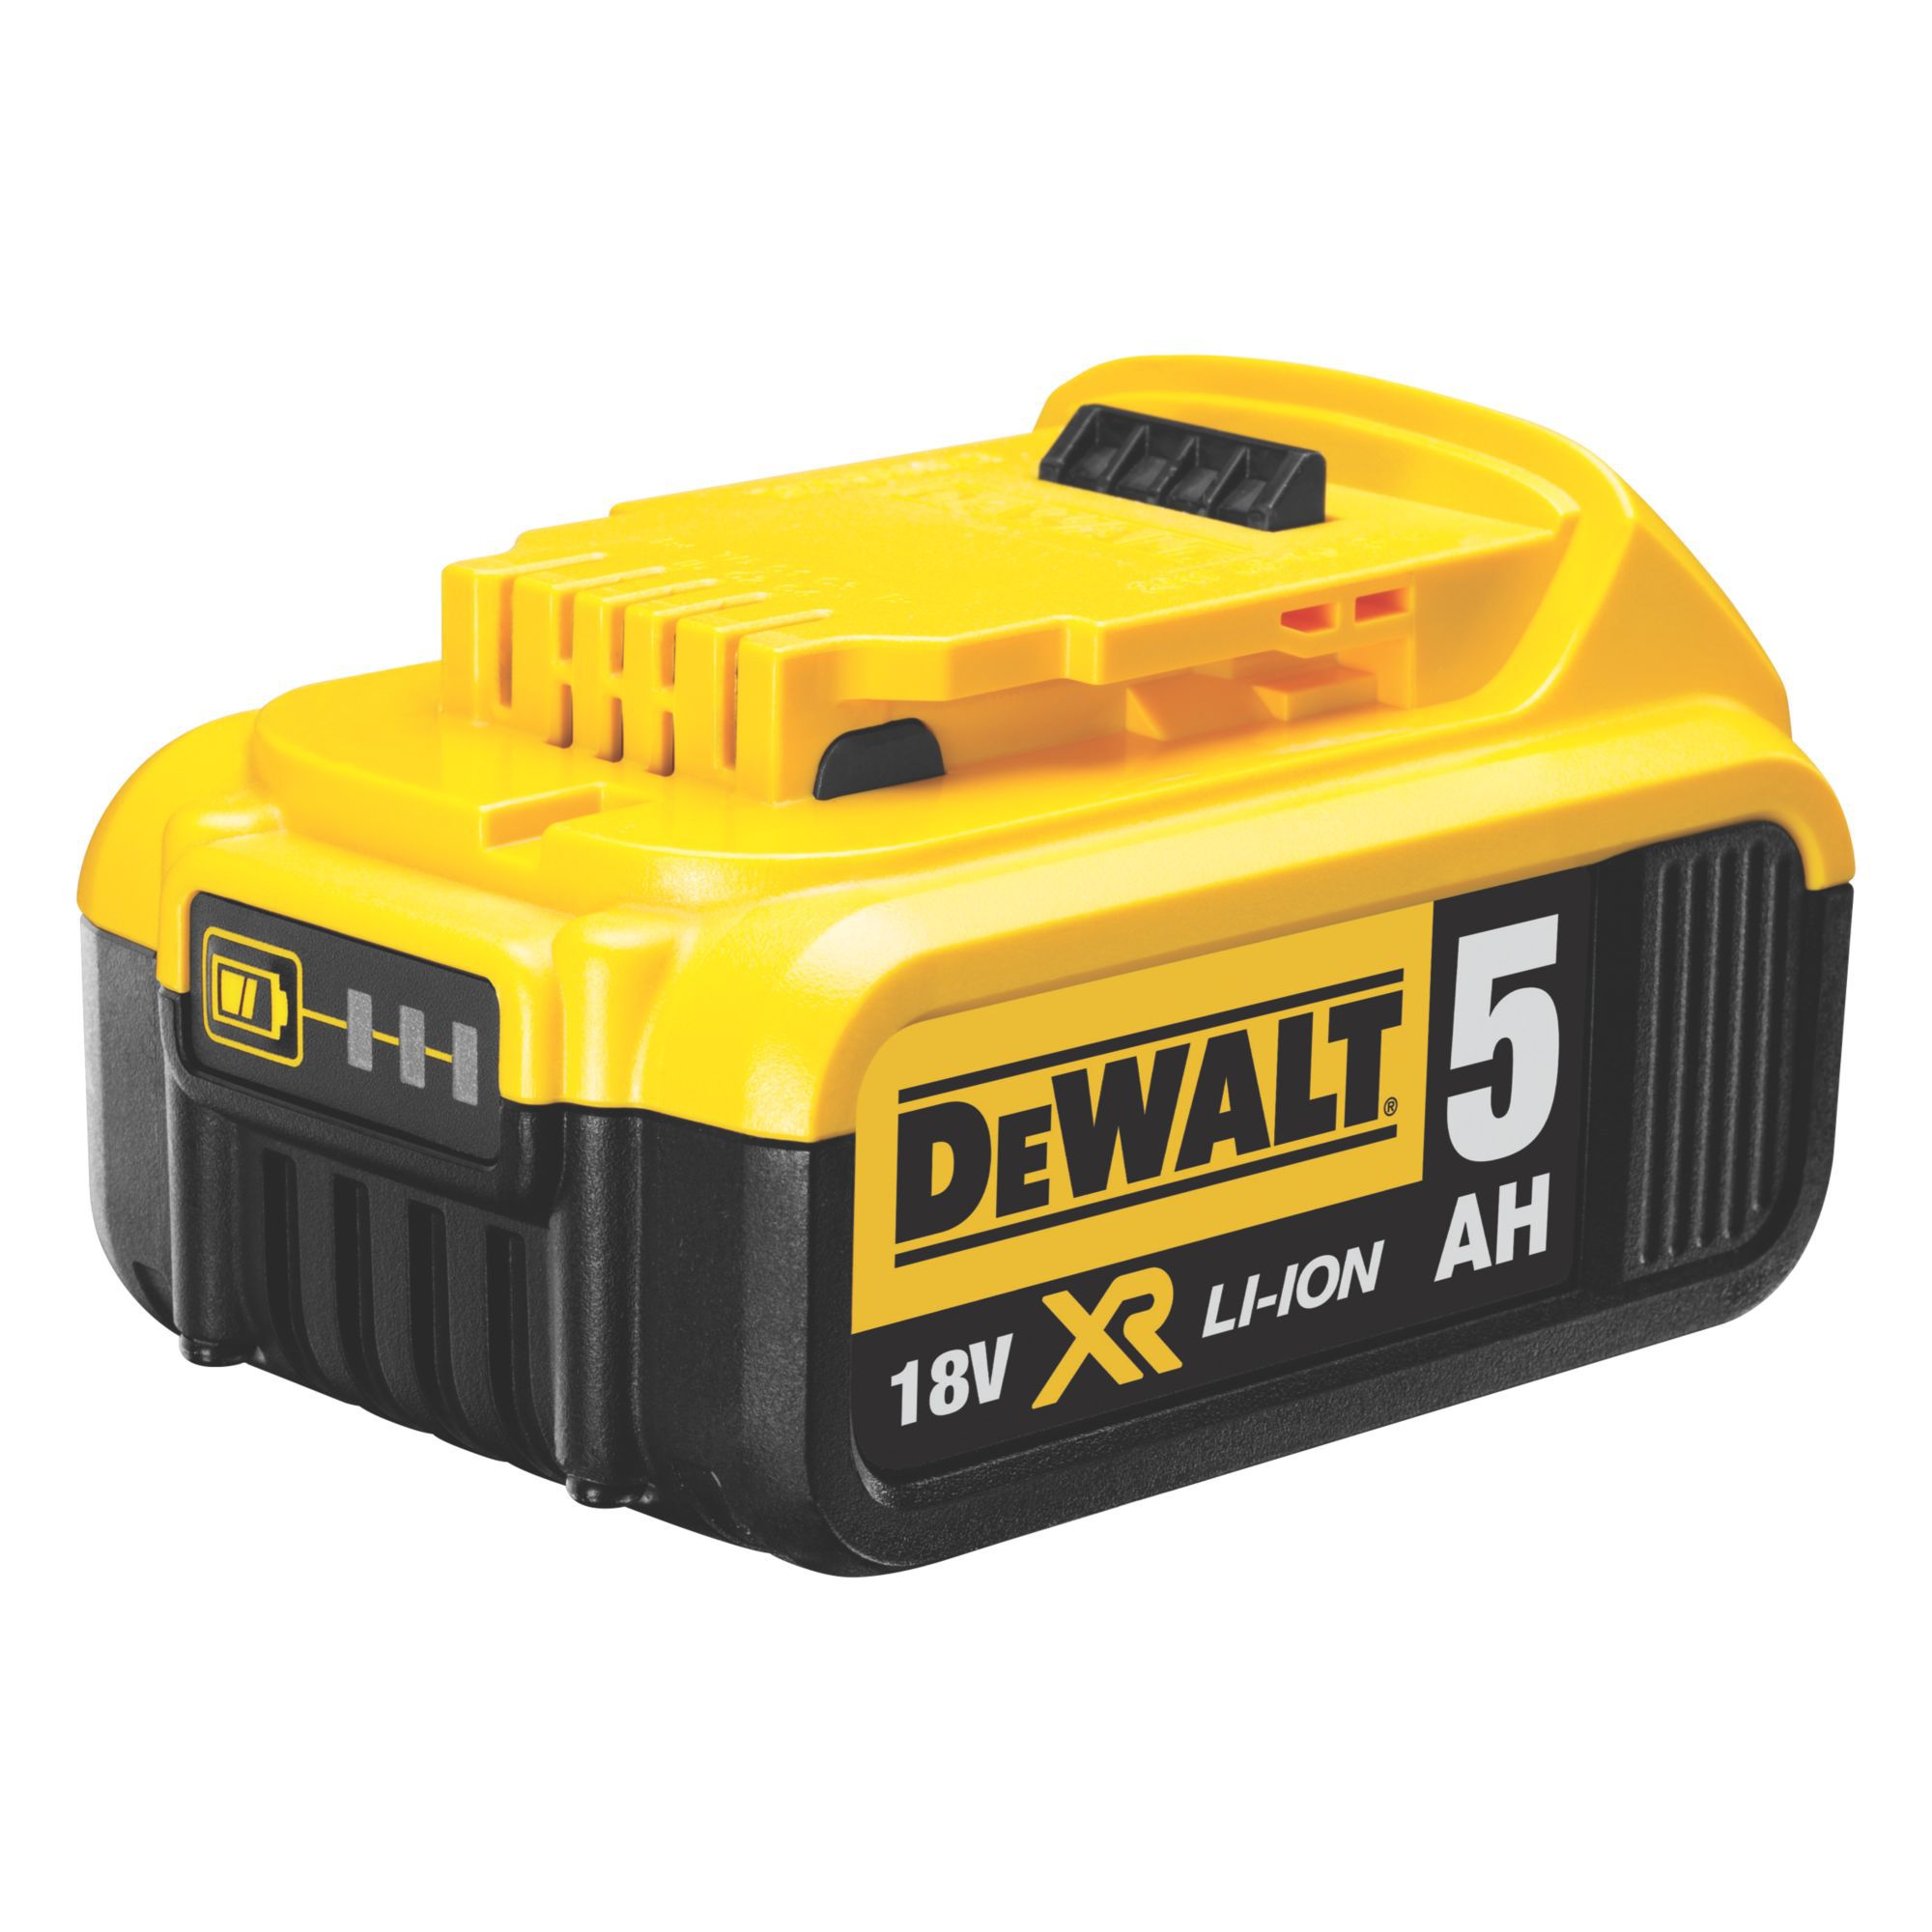 DeWalt 18V 2 x 5 Li-ion Brushless Cordless Combi drill DCD796P2-GB